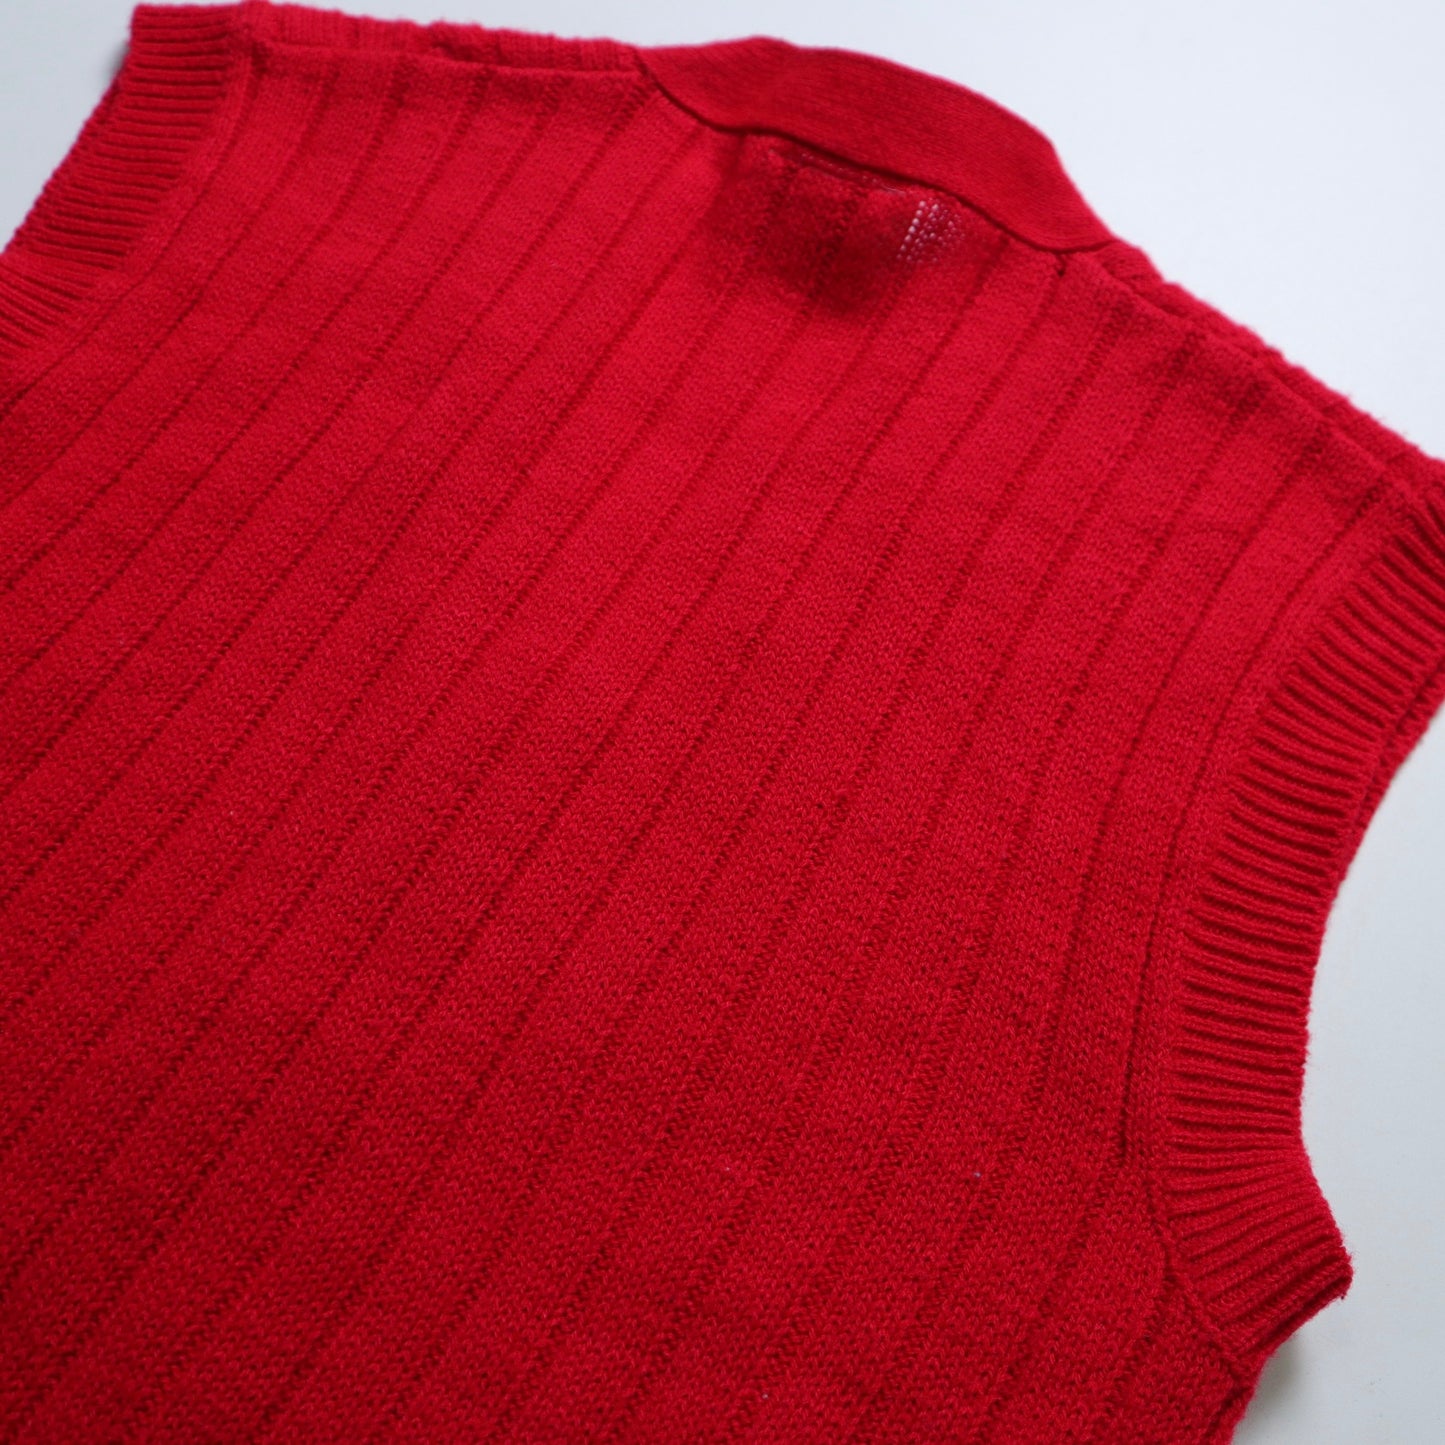 70's 台灣製 紅色麻繩針織背心 素面排扣背心